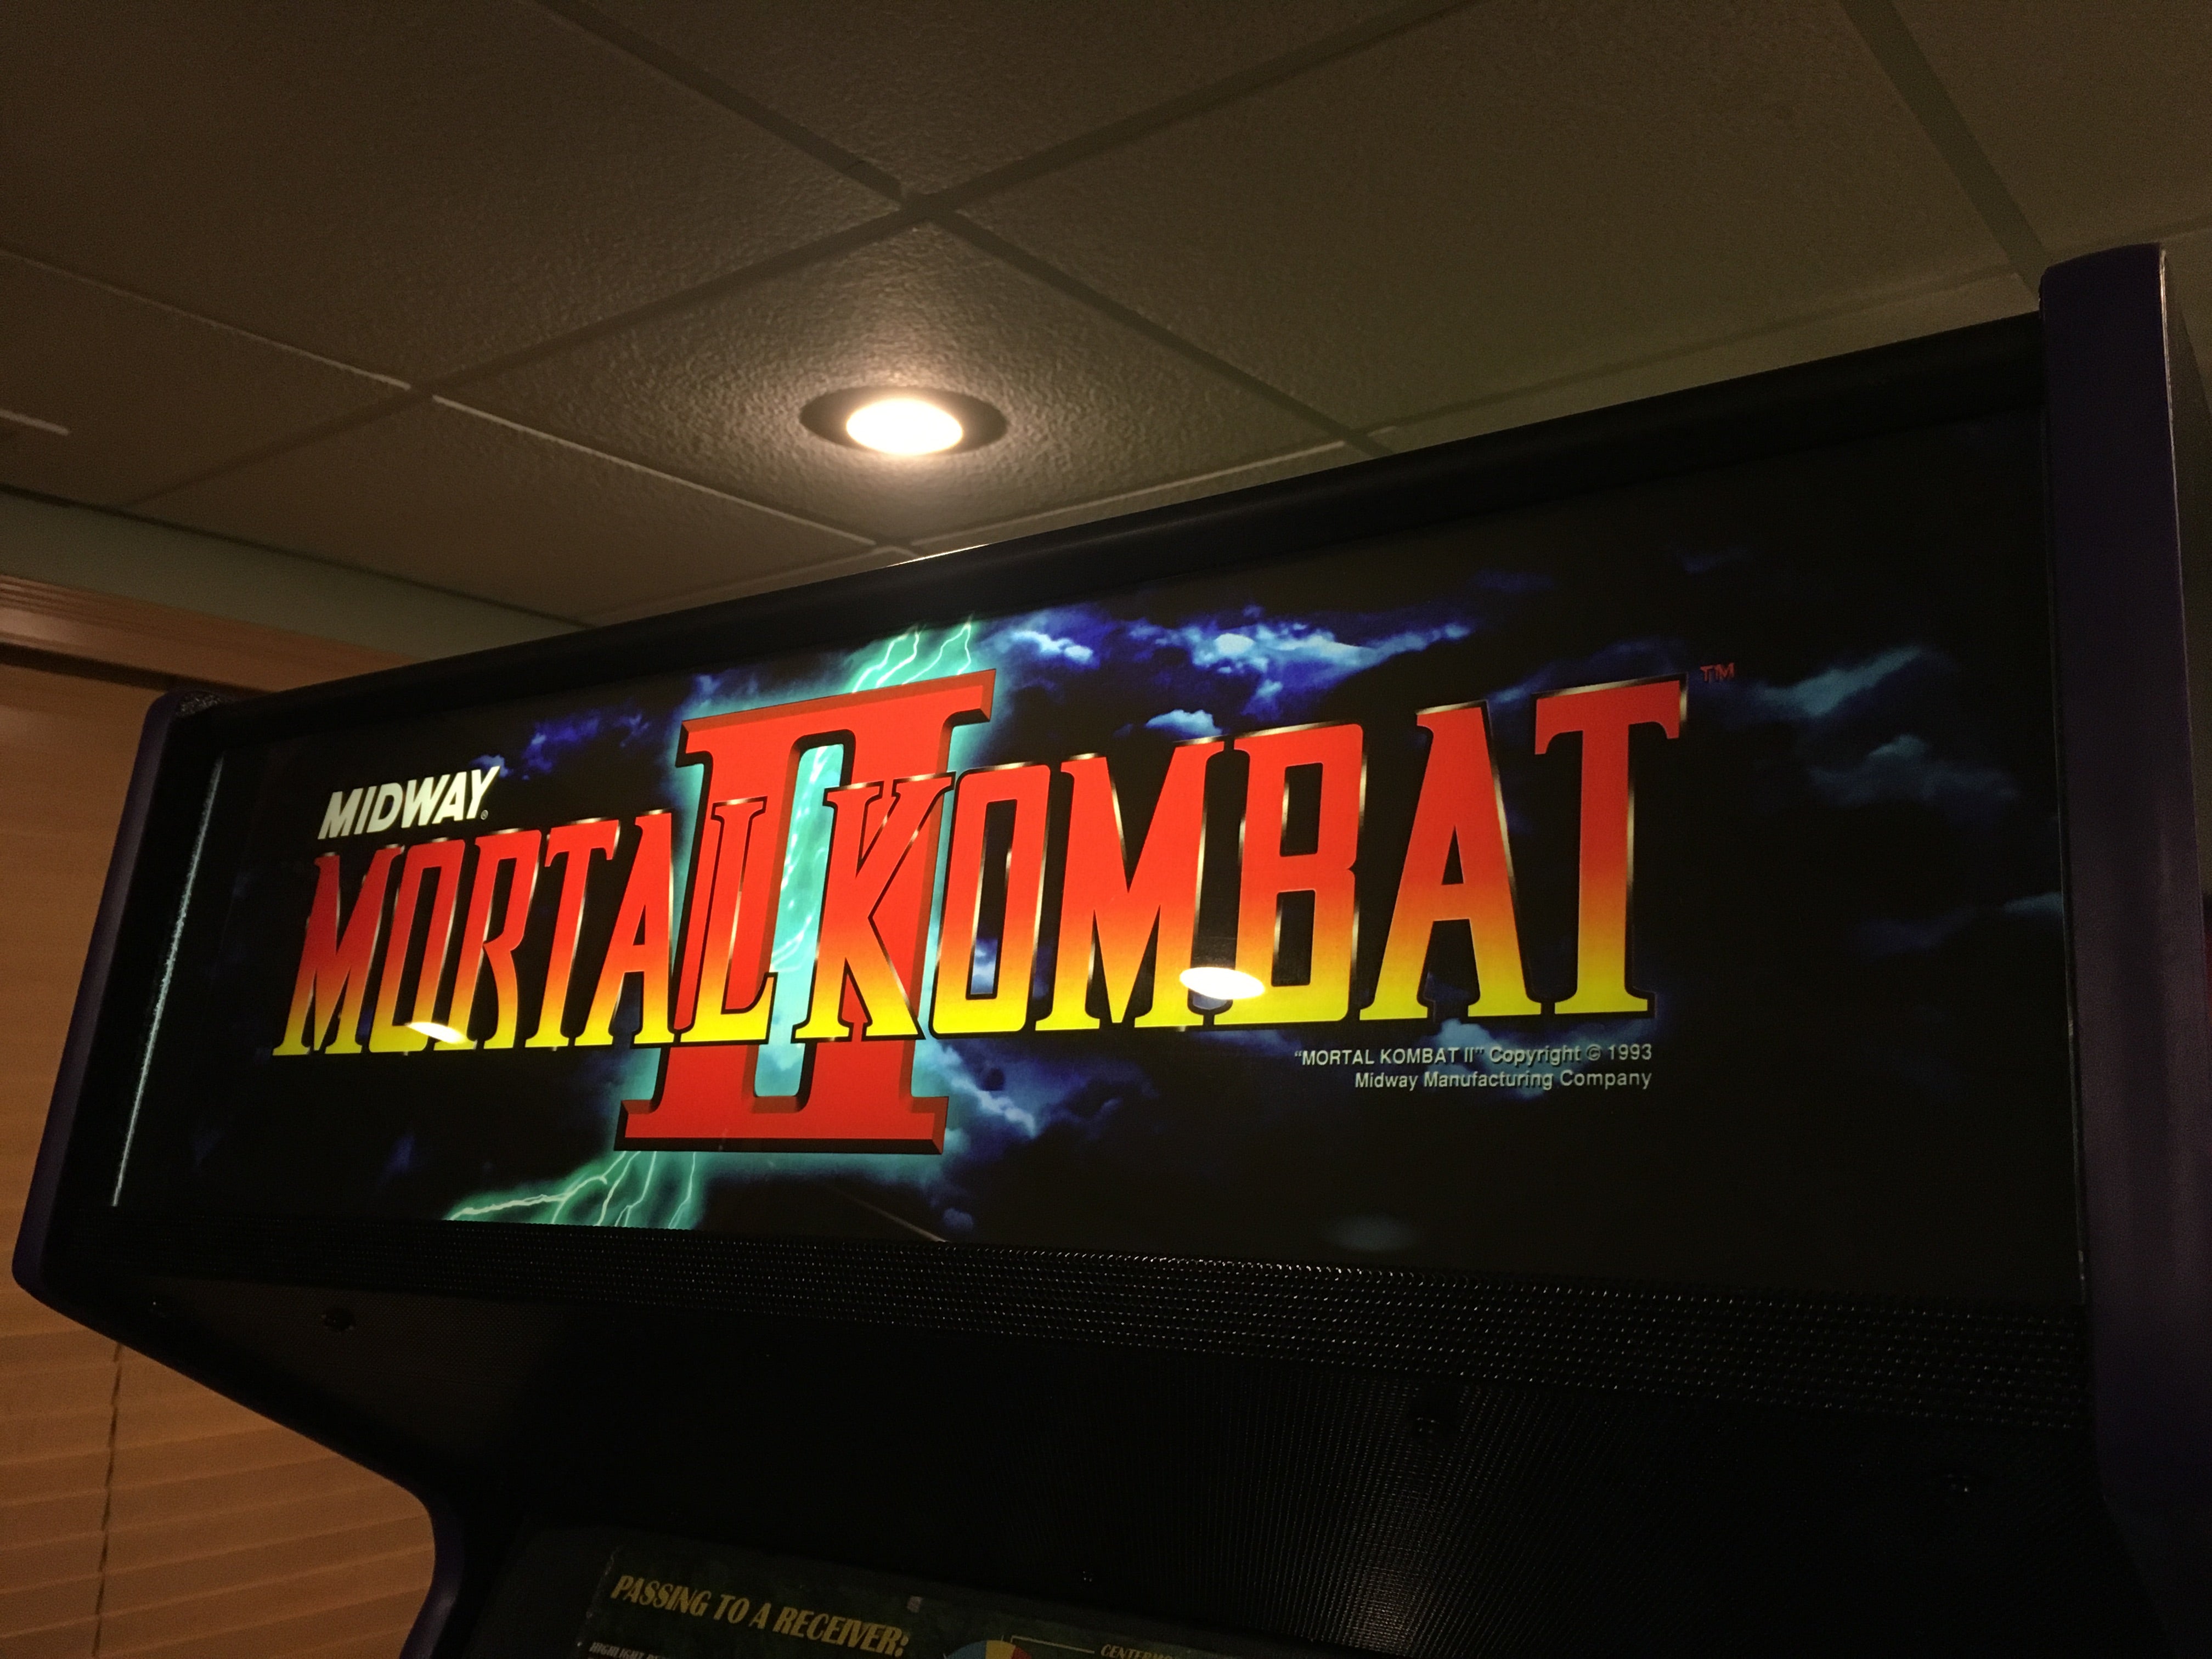 Chapiteau Mortal Kombat 2